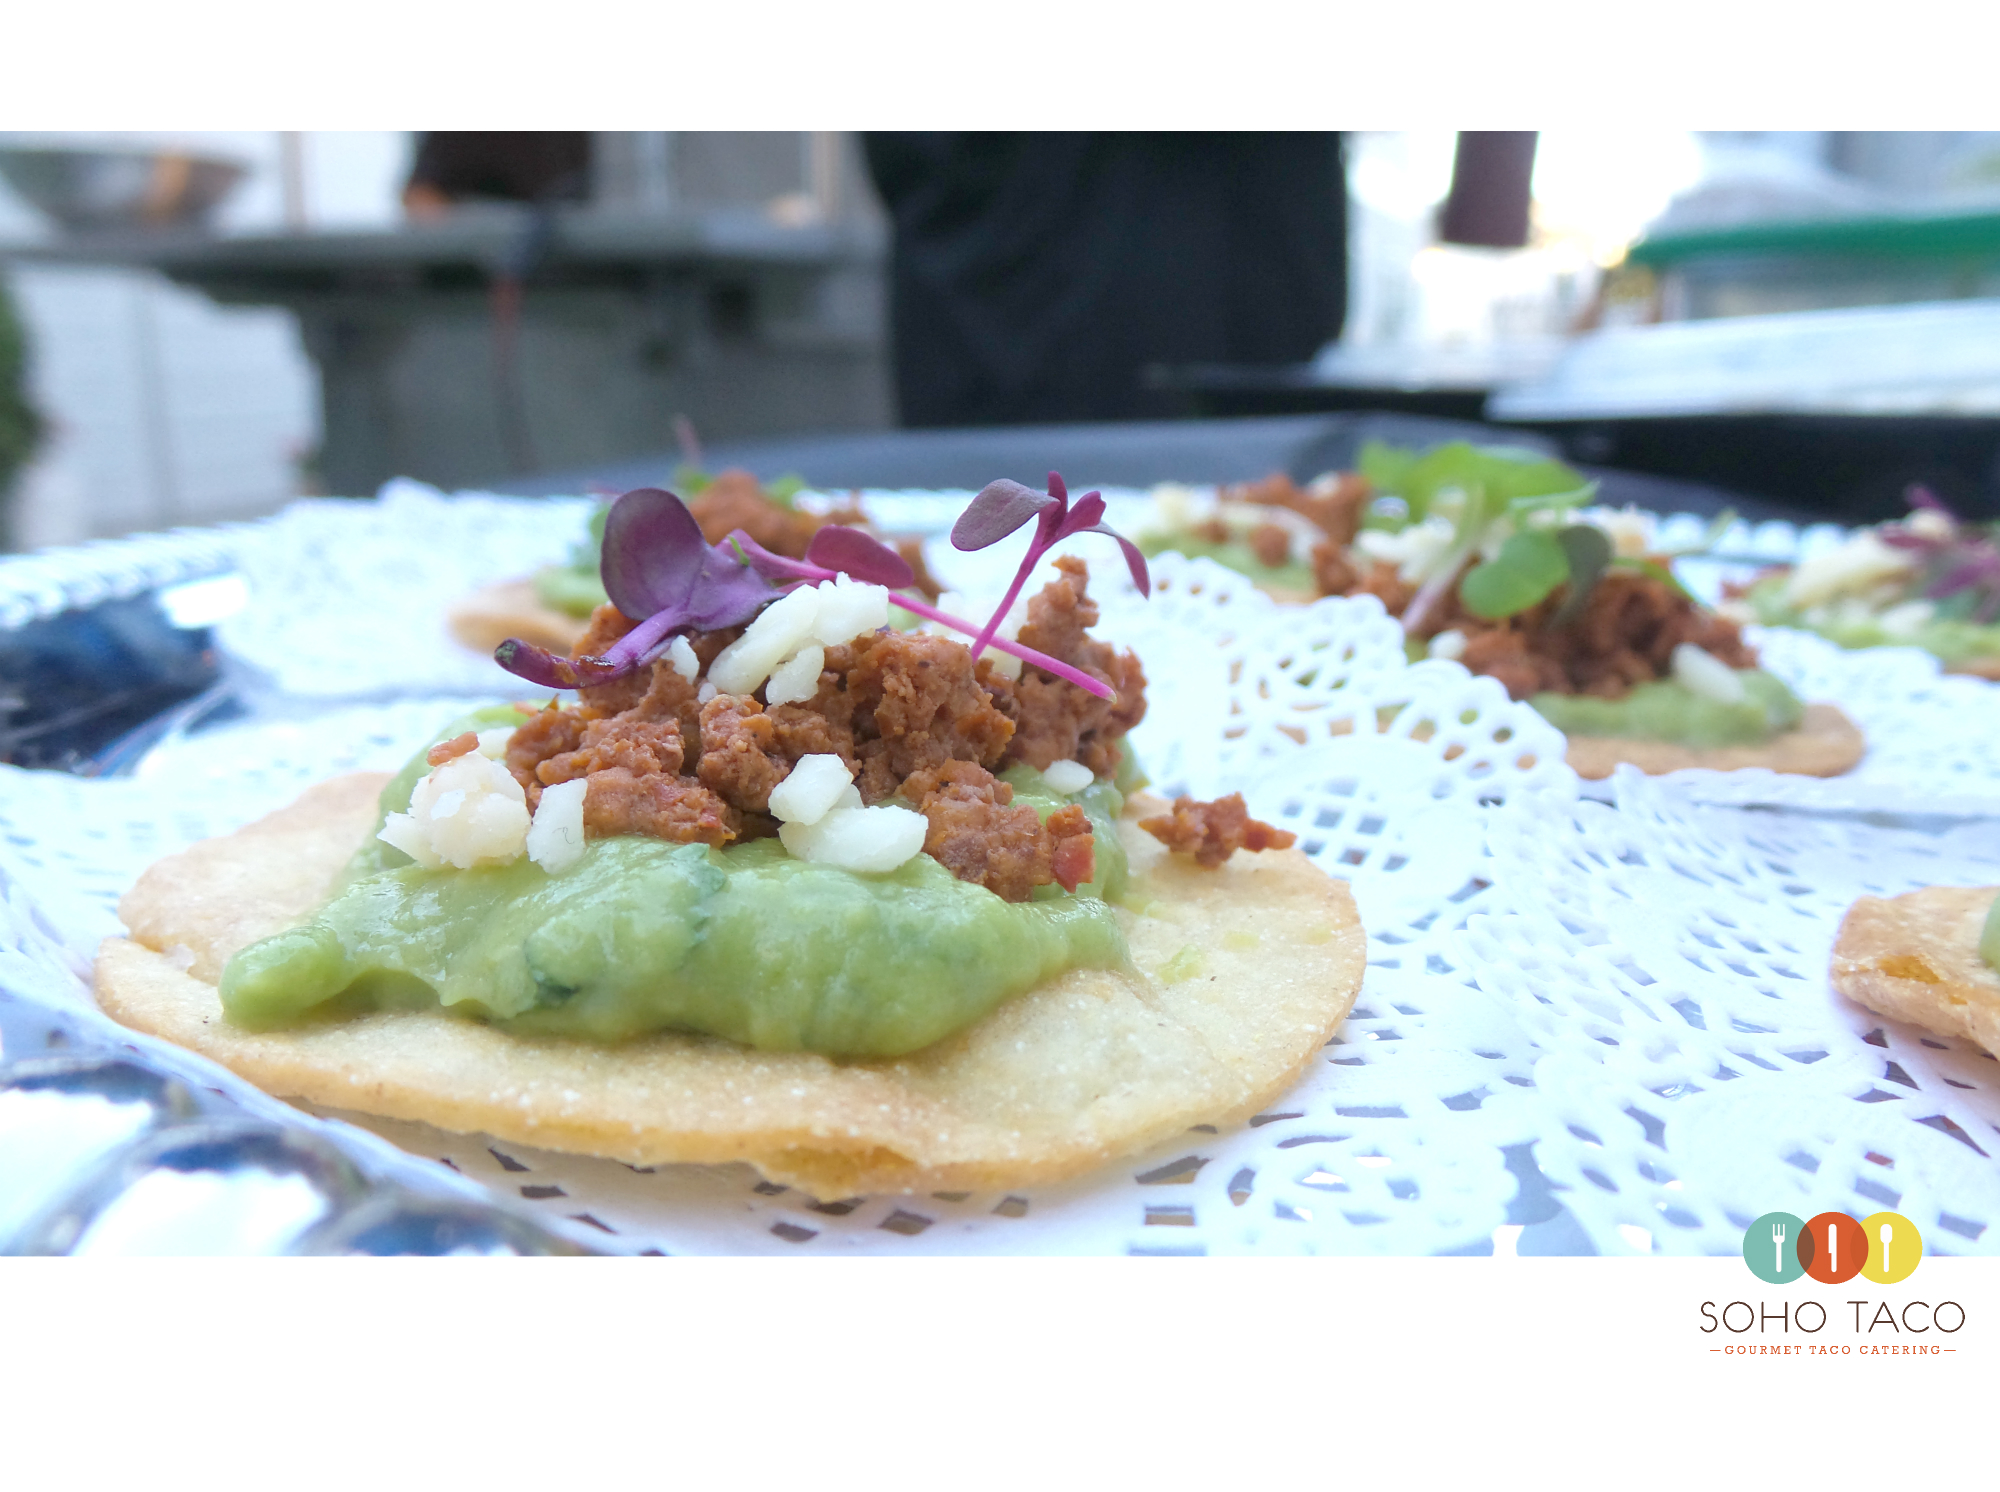 SOHO TACO Gourmet Taco Catering - Redondo Beach - Tosadita De Chorizo